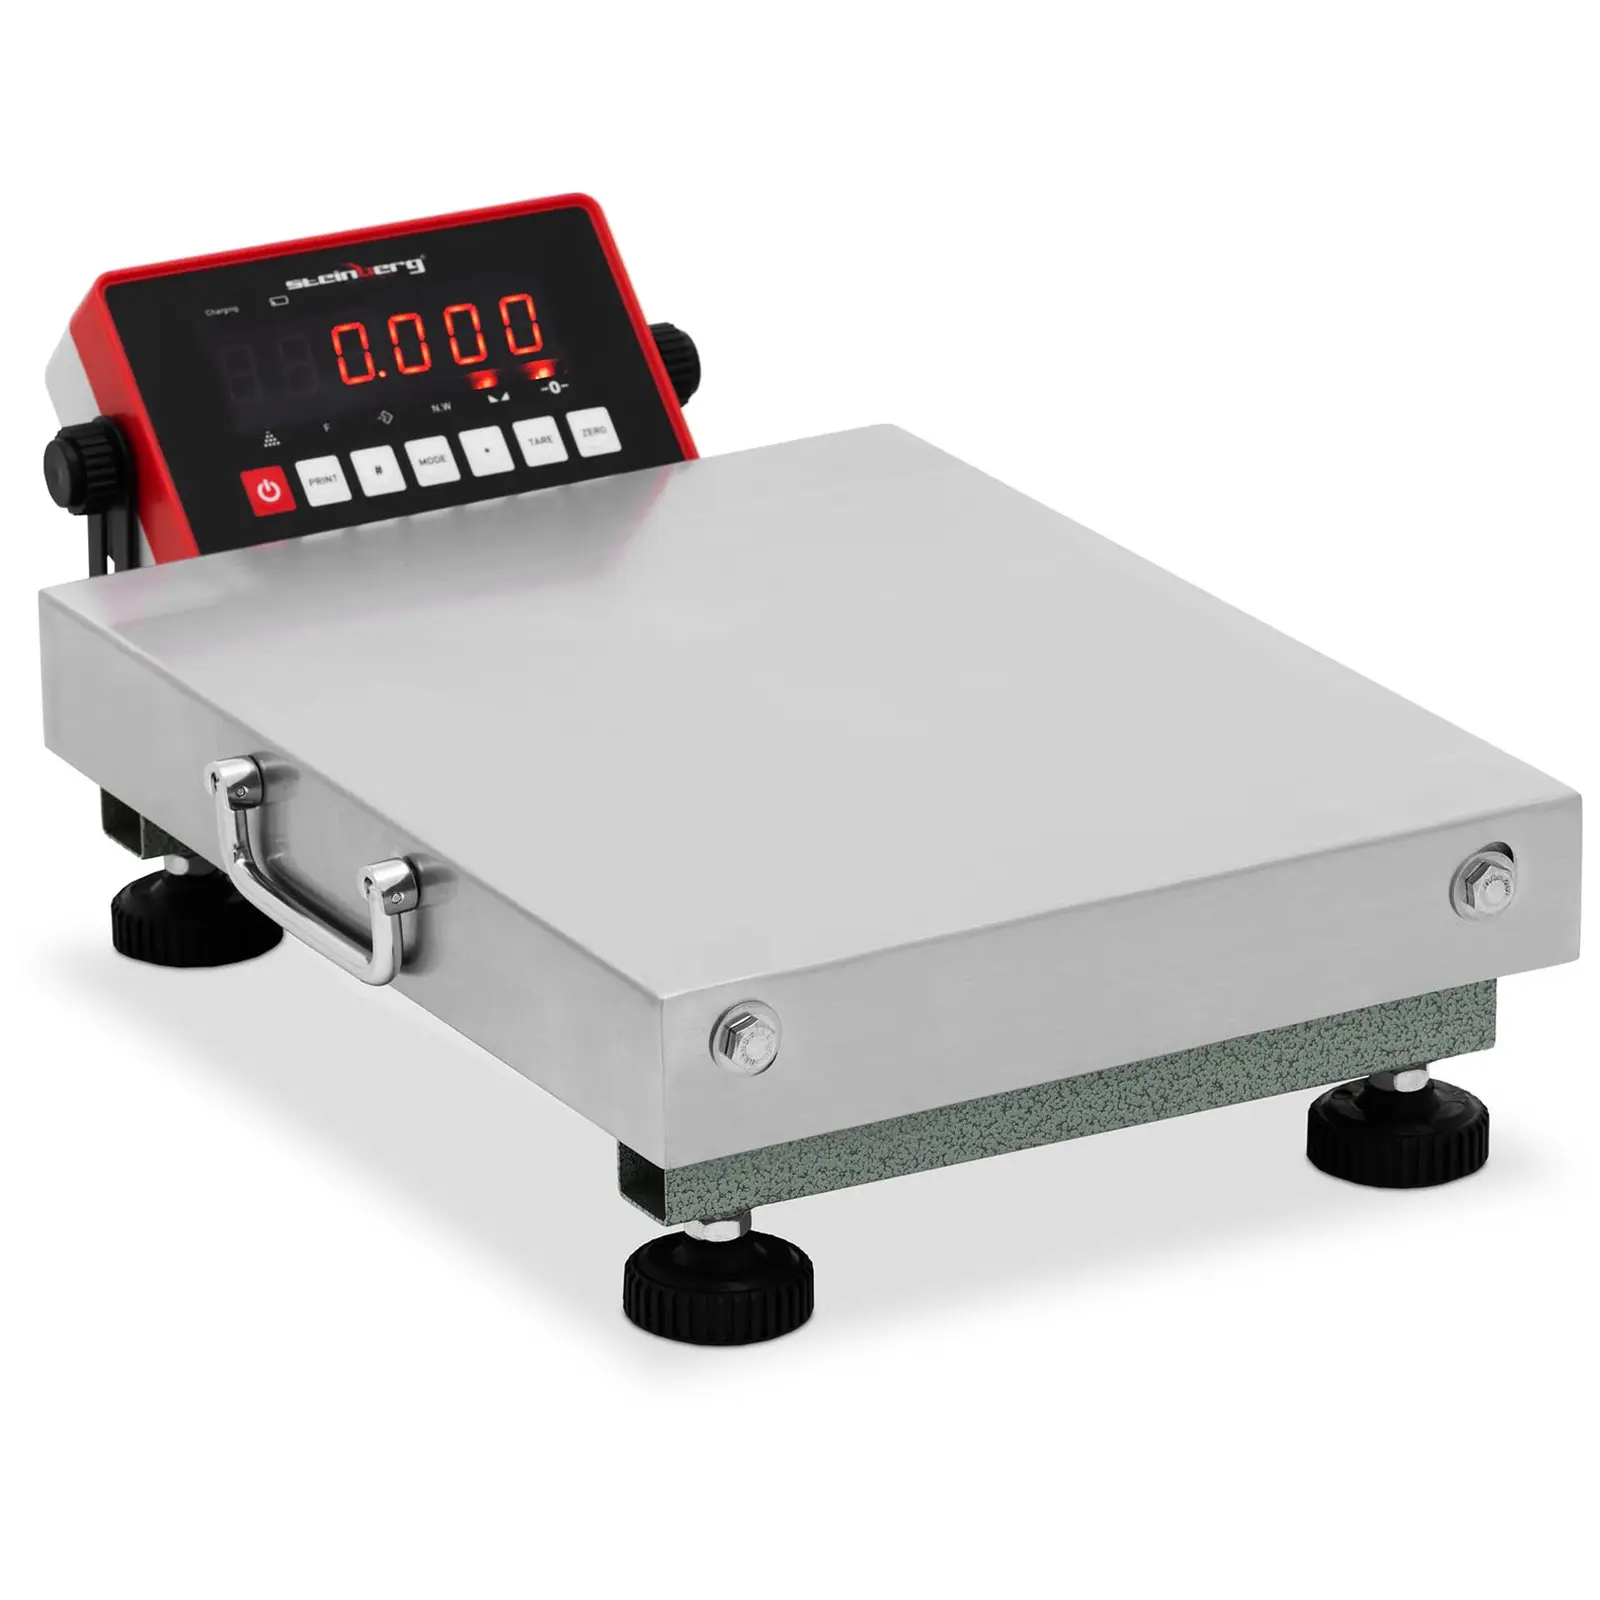 Plošinová váha 150 kg / 0,04 kg 300 x 400 x 104 mm kg / lb - Plošinové váhy Steinberg Systems